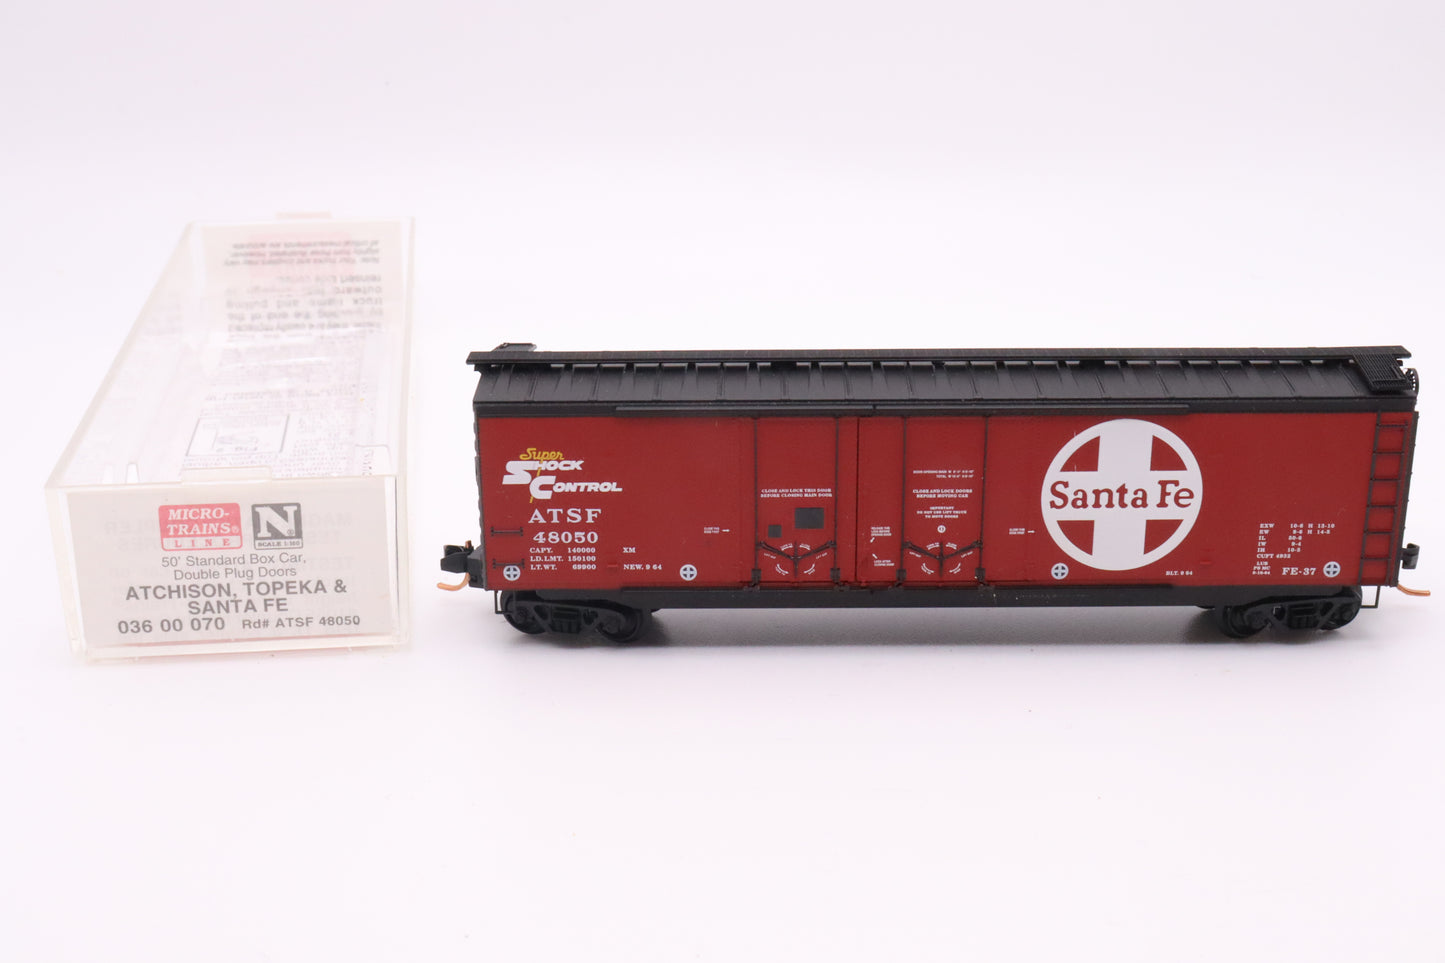 MTL-036 00 070 - 50' Standard Box Car, Double Plug Doors - Santa Fe - ATSF #48050